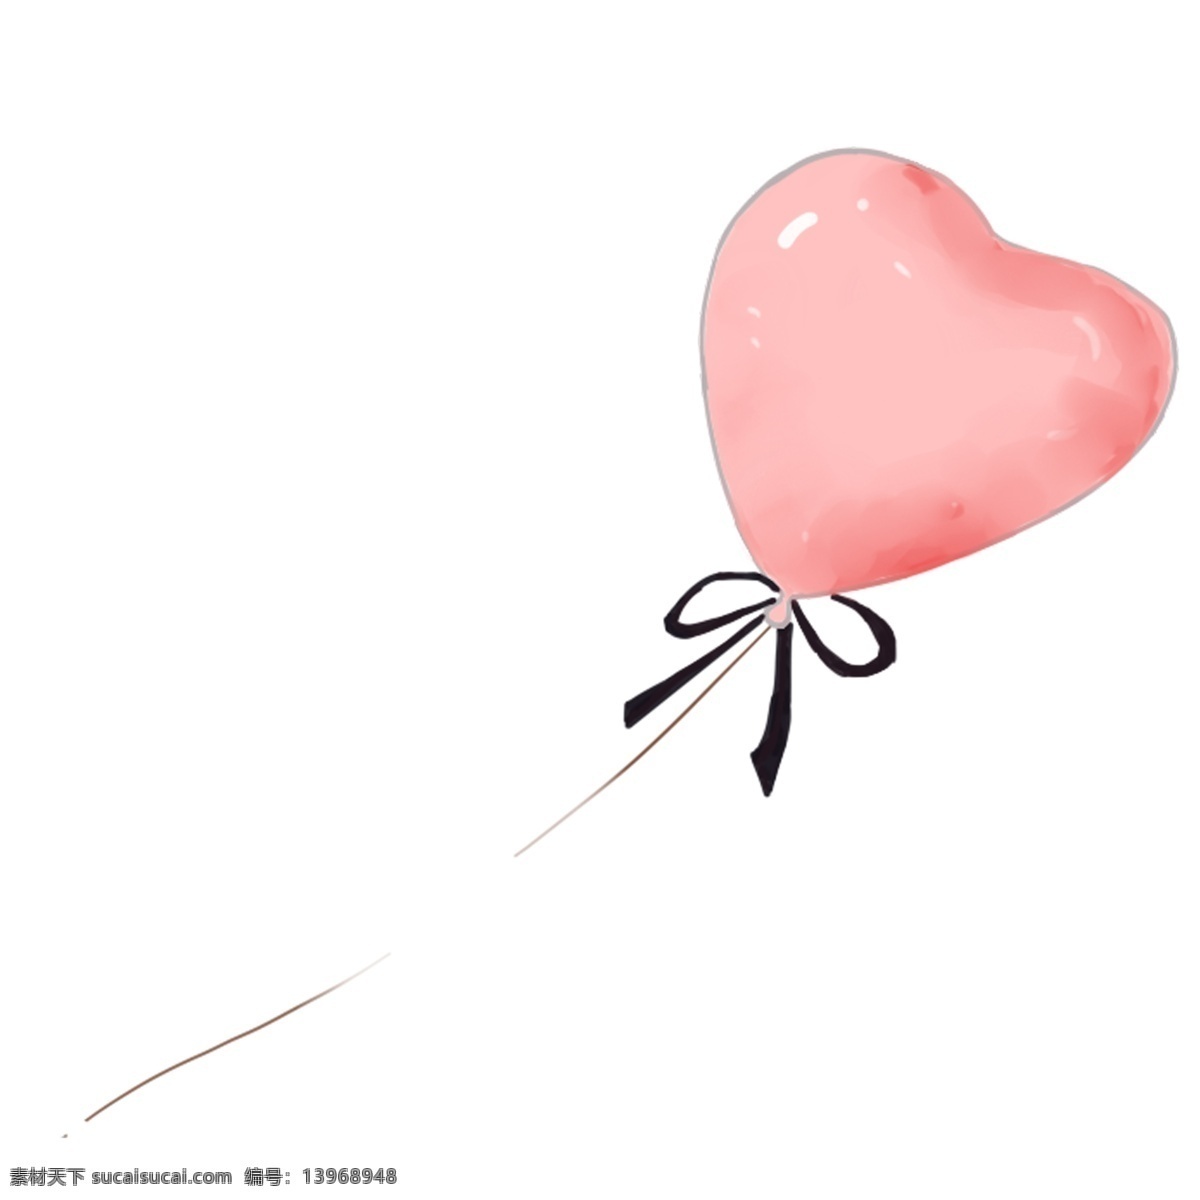 情人节 爱心 汽 球 免 抠 图 汽球 免抠图 粉色汽球 爱心汽球 心形汽球 214 520 装饰物 蝴蝶结